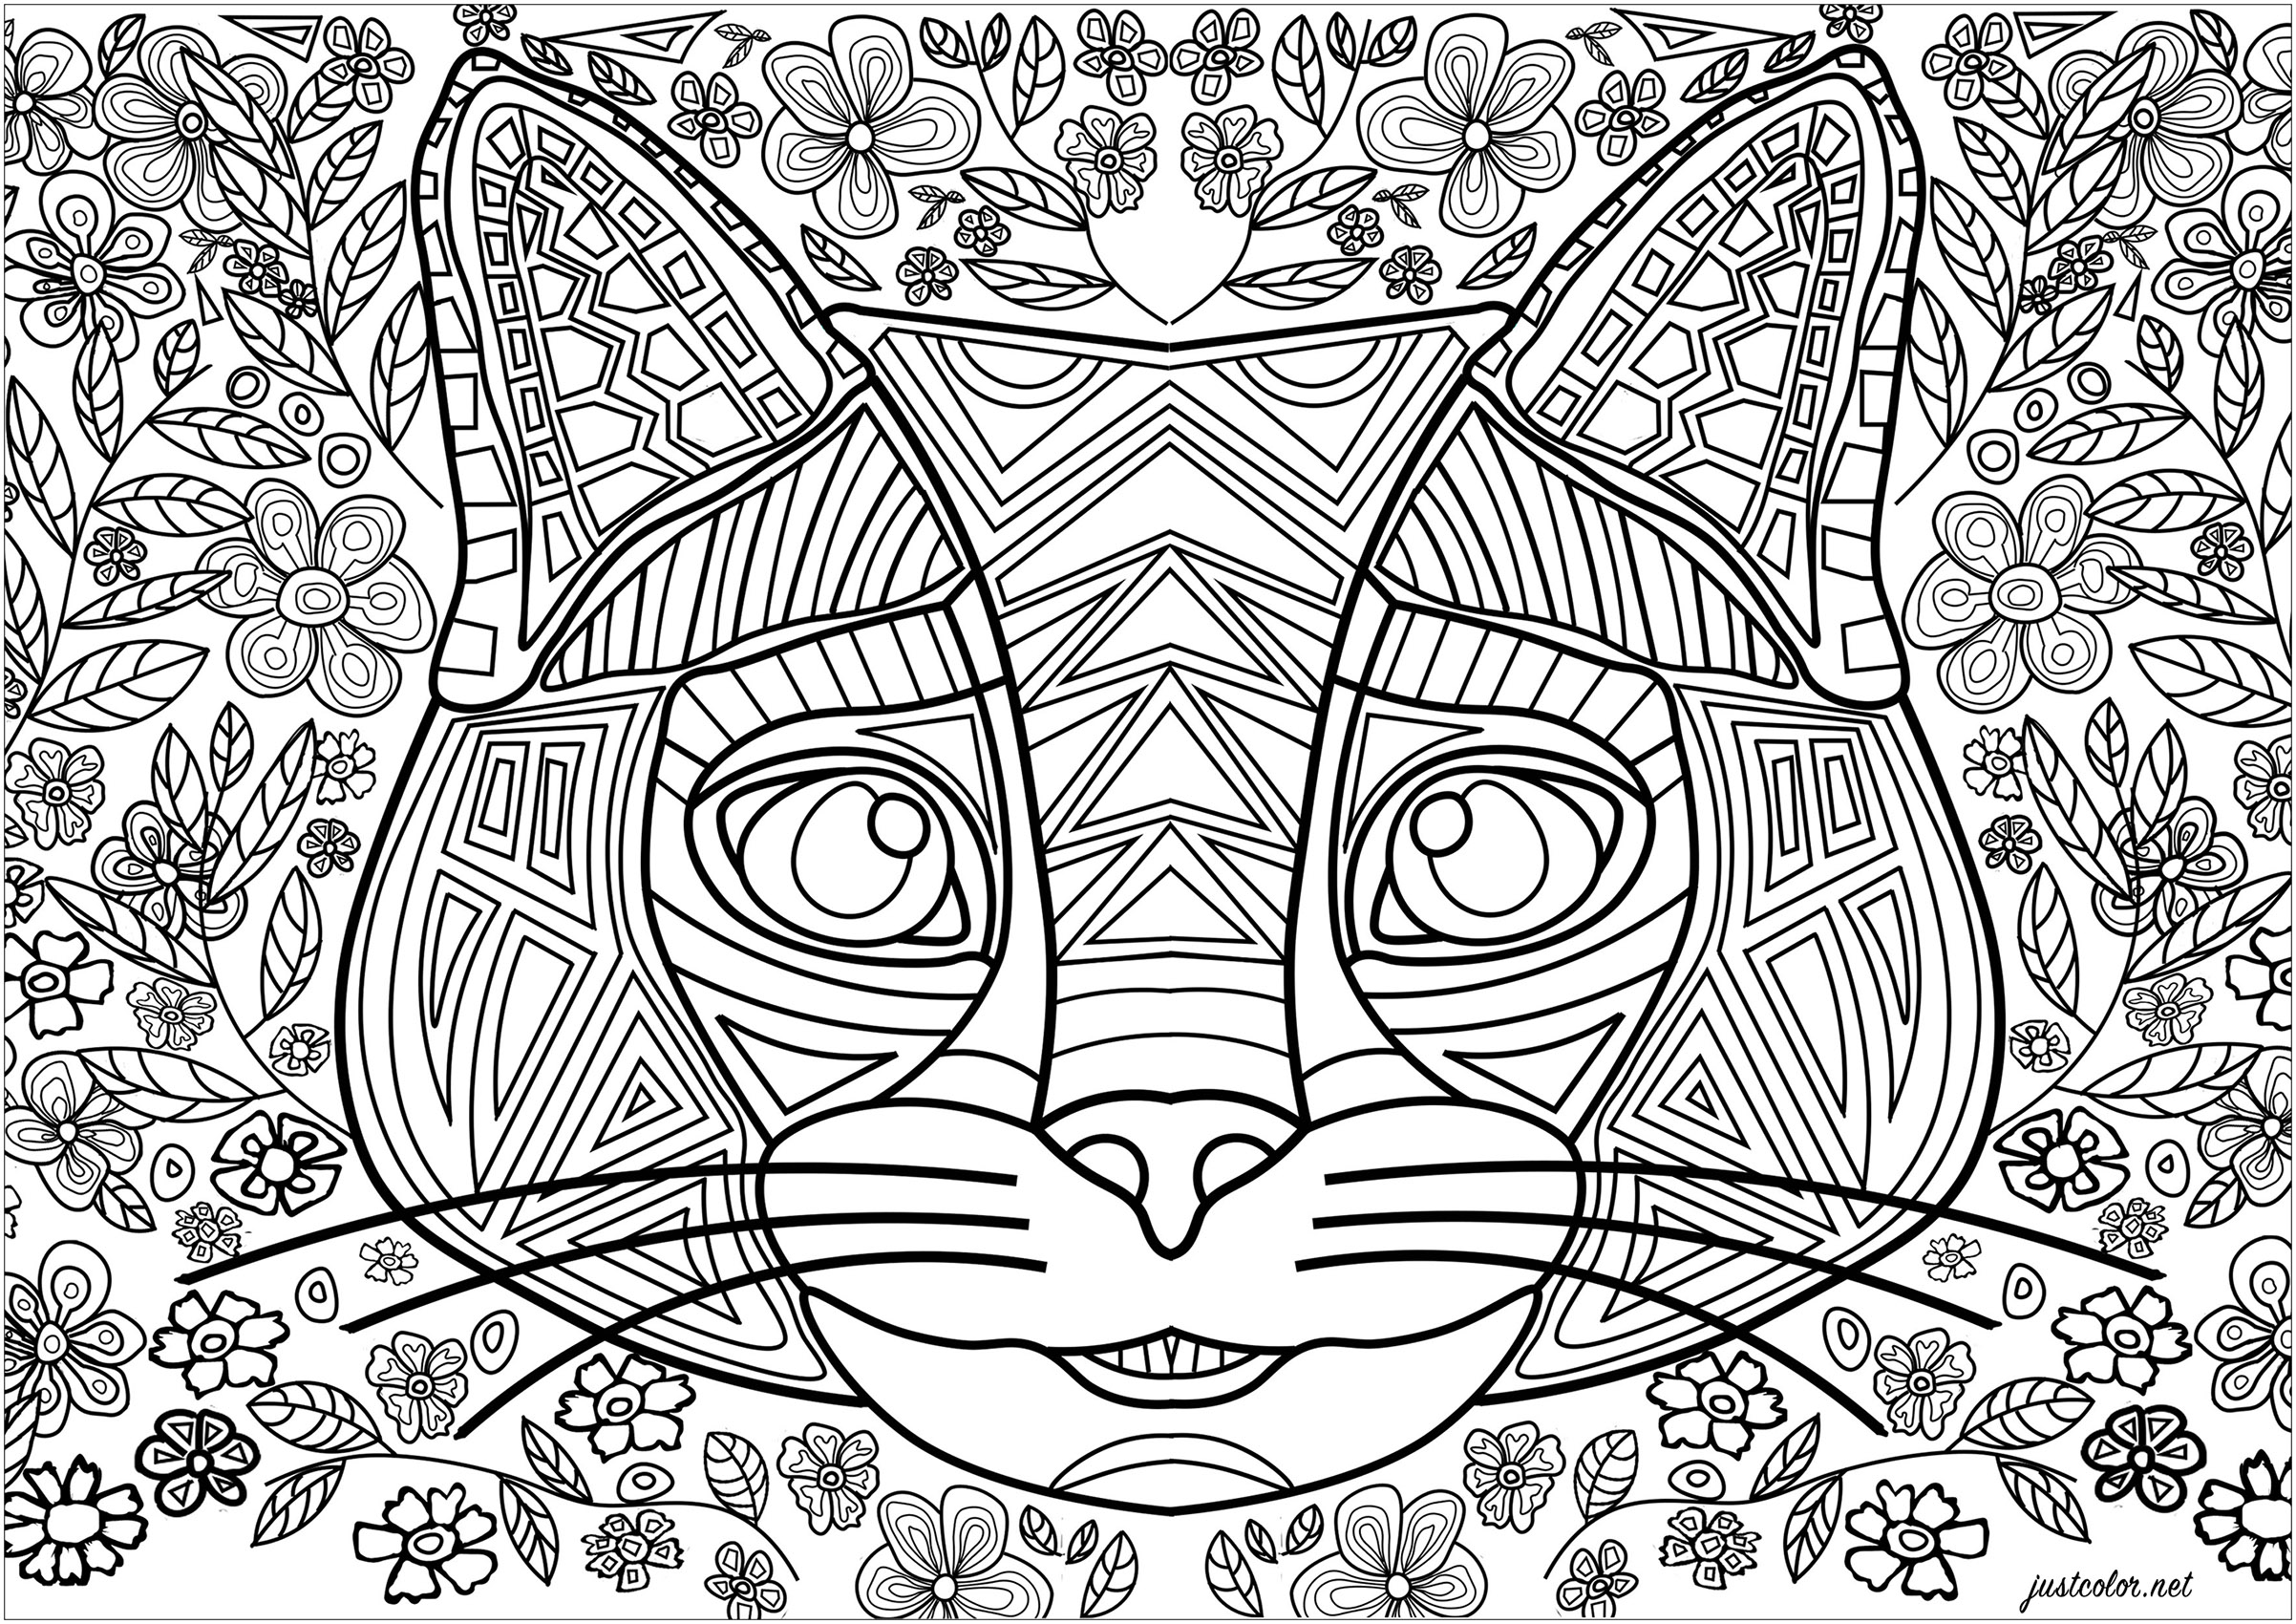 Katzenkopf, der aus regelmäßigen Linien und geometrischen Formen besteht.